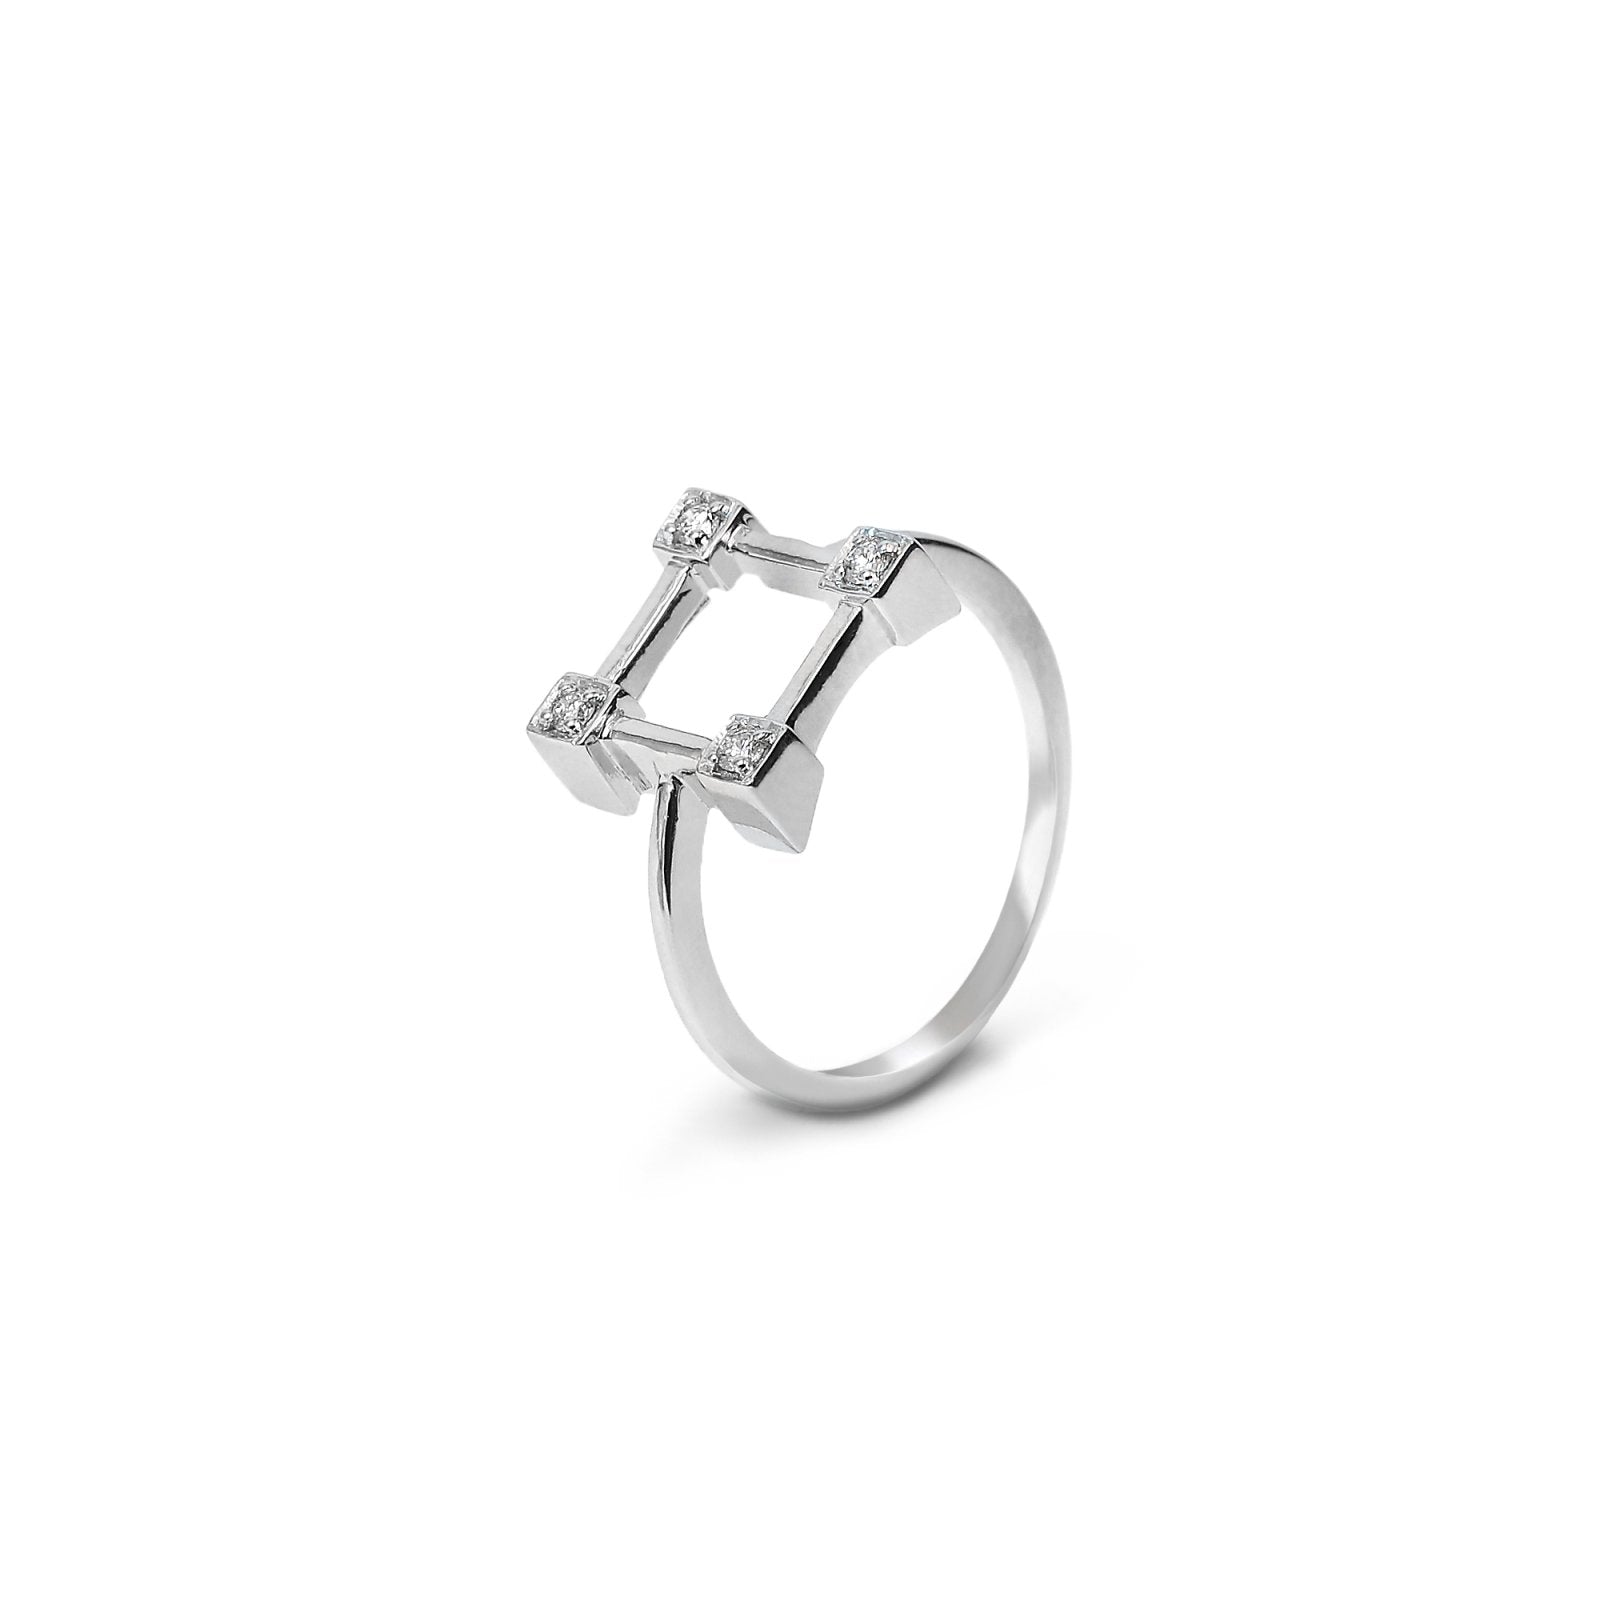 Straight Square Design White Gold Diamond Ring 14k.TDW:0.09ct2.72gr